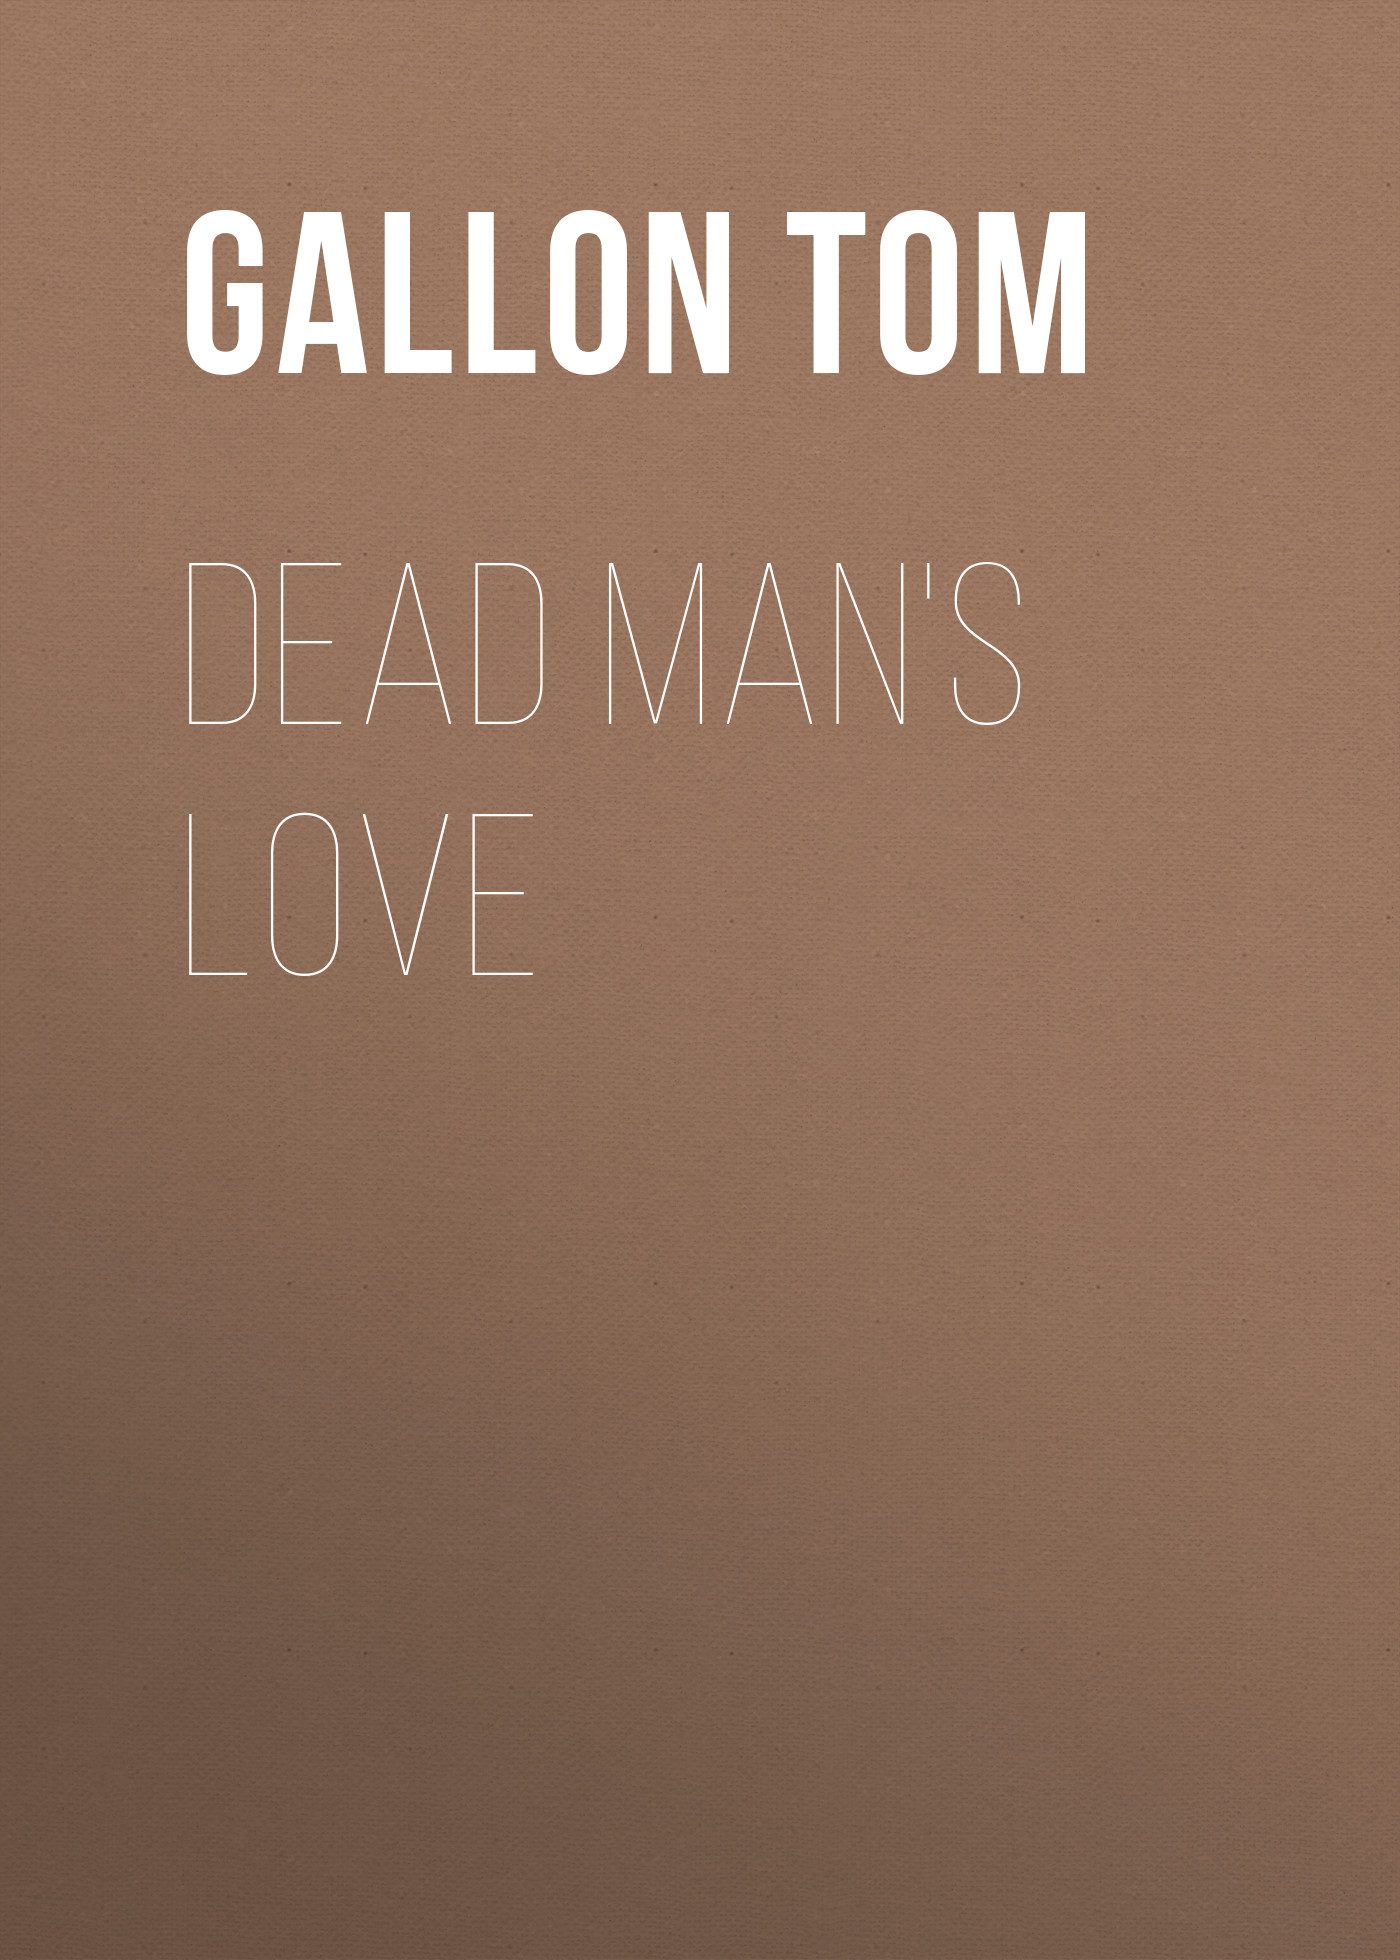 Книга Dead Man's Love из серии , созданная Tom Gallon, может относится к жанру Зарубежная старинная литература, Зарубежная классика. Стоимость электронной книги Dead Man's Love с идентификатором 24859067 составляет 0 руб.